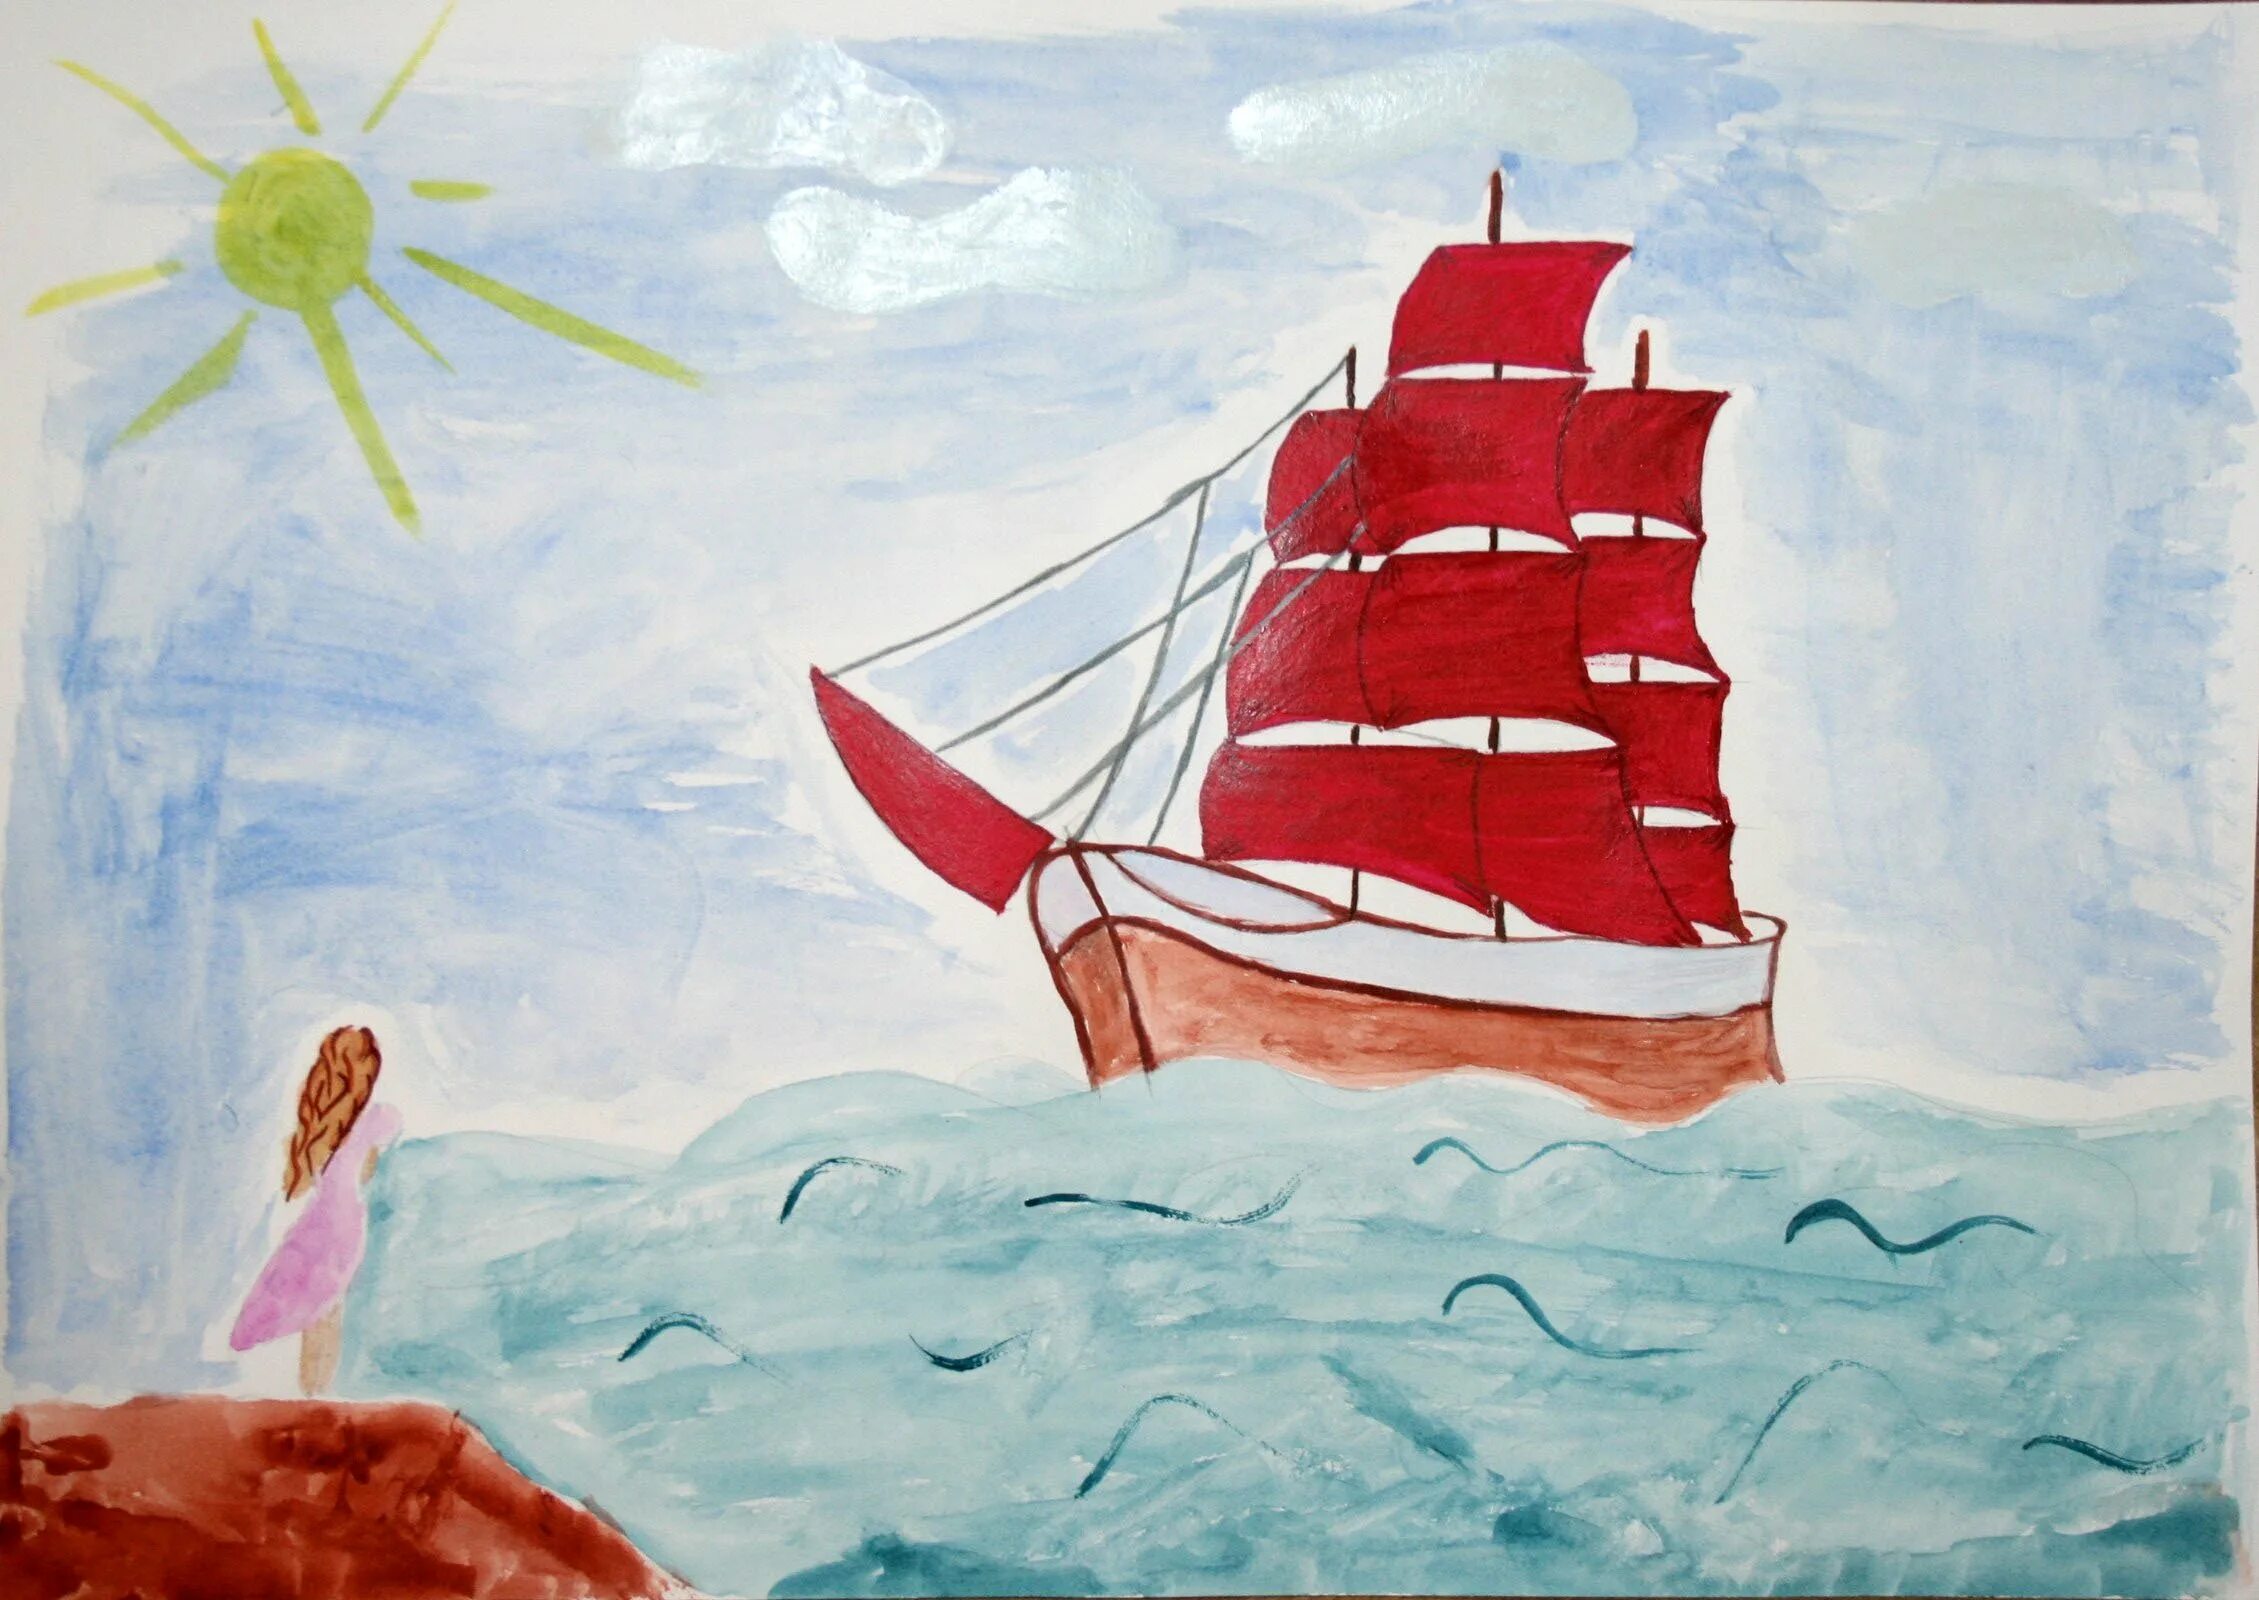 Алые паруса рисунок легко. Корабль в море рисунок. Детские рисунки кораблей. Корабль с алыми парусами рисунок. Алые паруса детский рисунок.